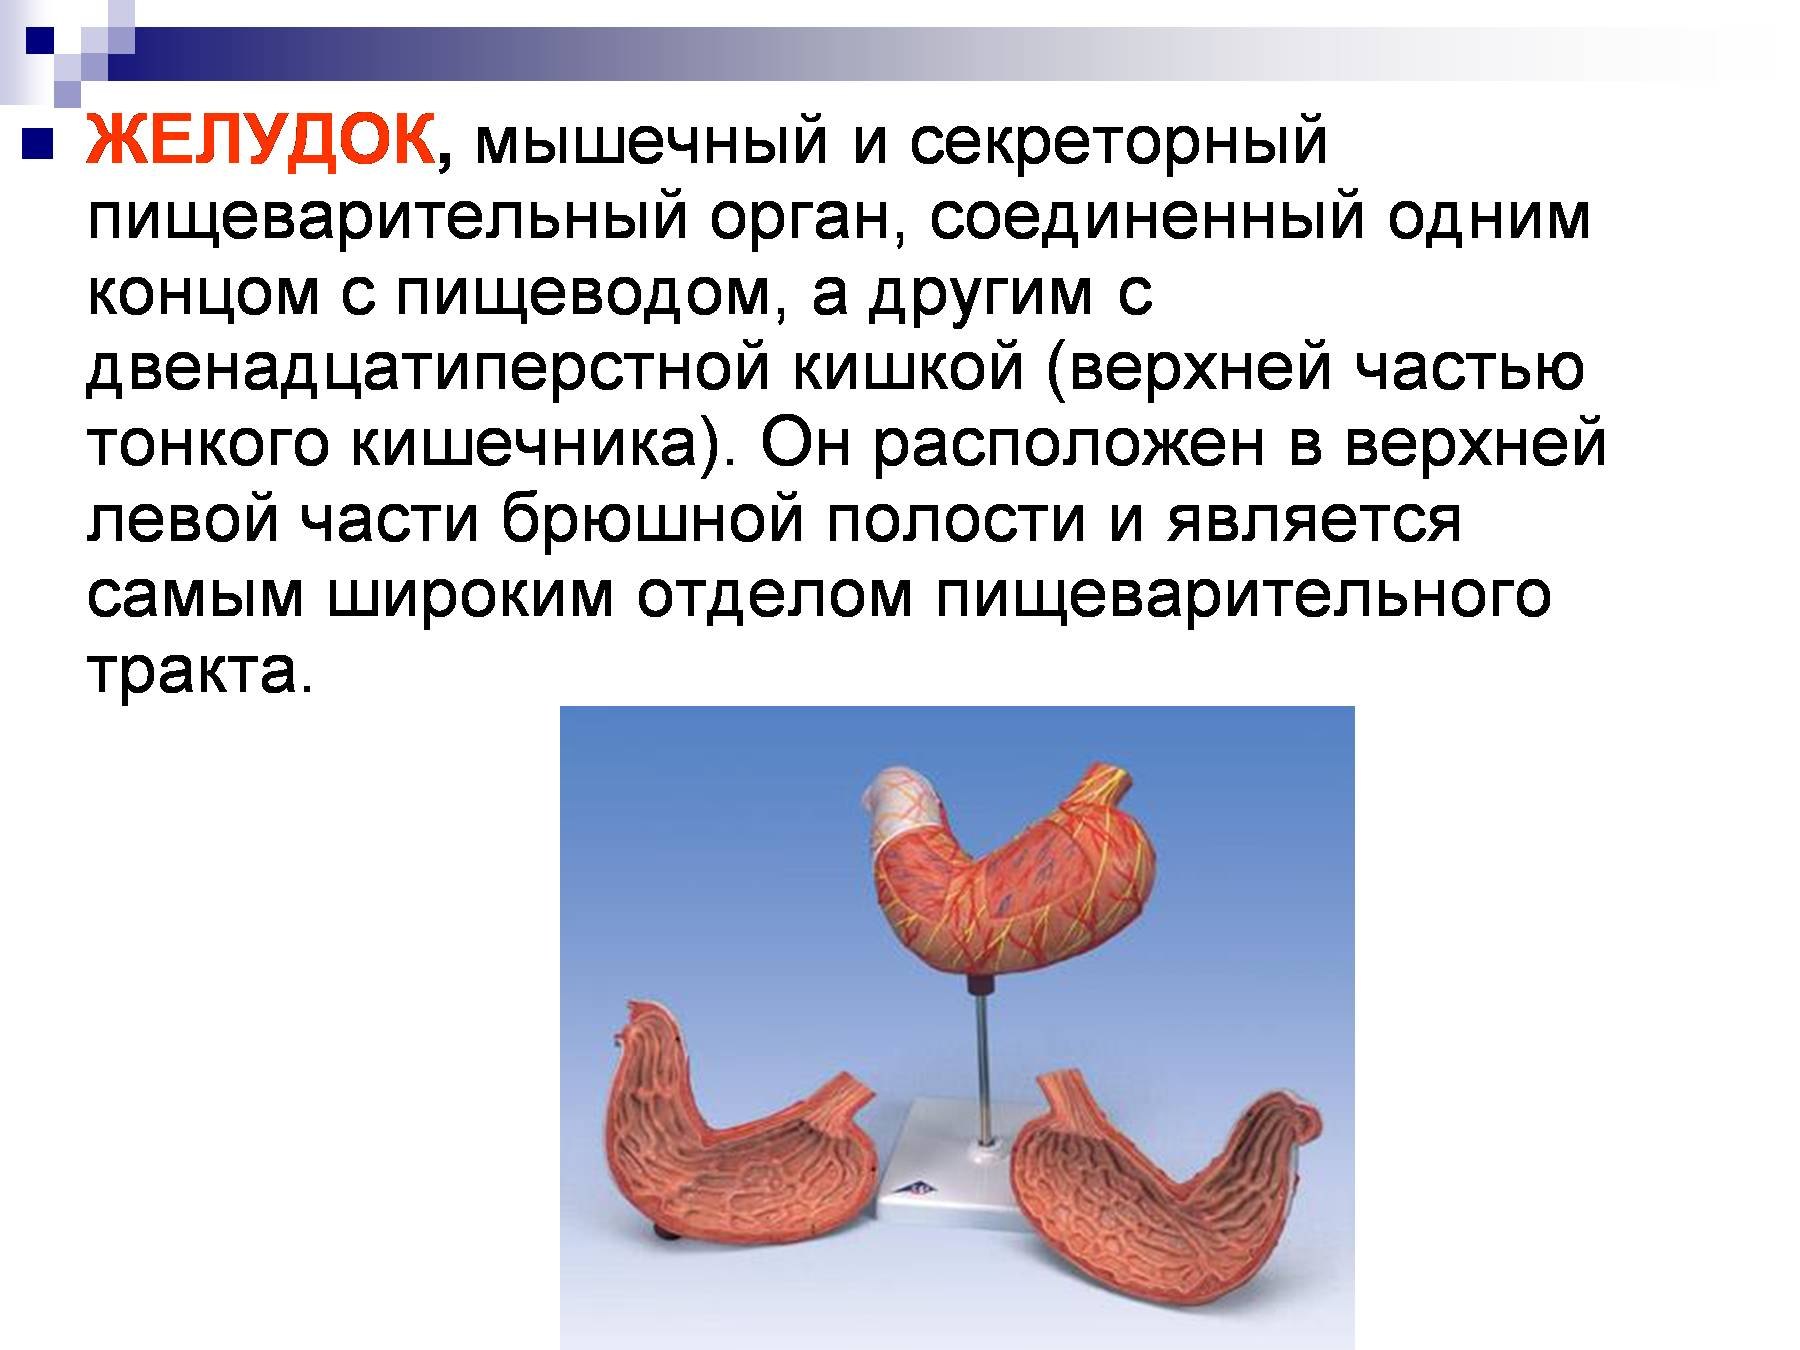 Мускульный желудок у птиц. Желудок курицы строение. Что находится в мускульном желудке птицы